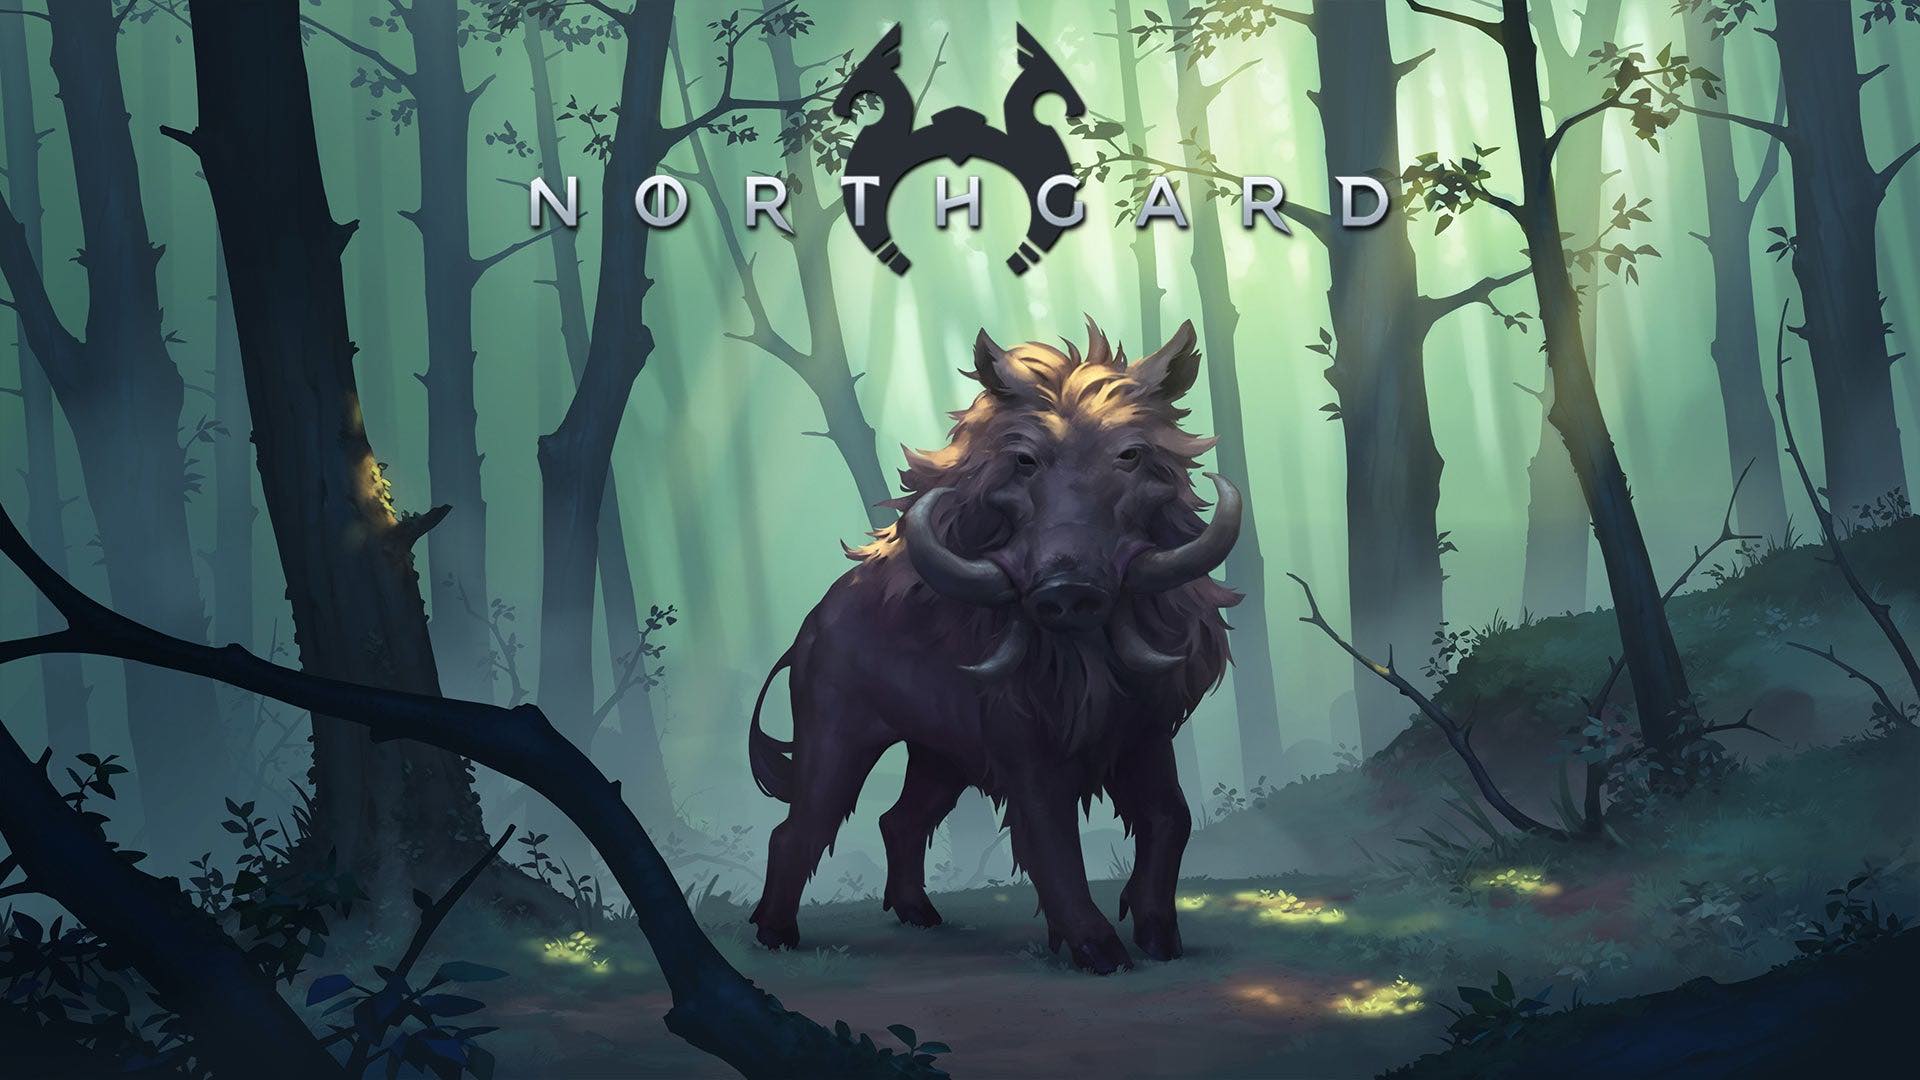 Uno los la estrategia de 2018, Northgard, llegará a PS4 este año